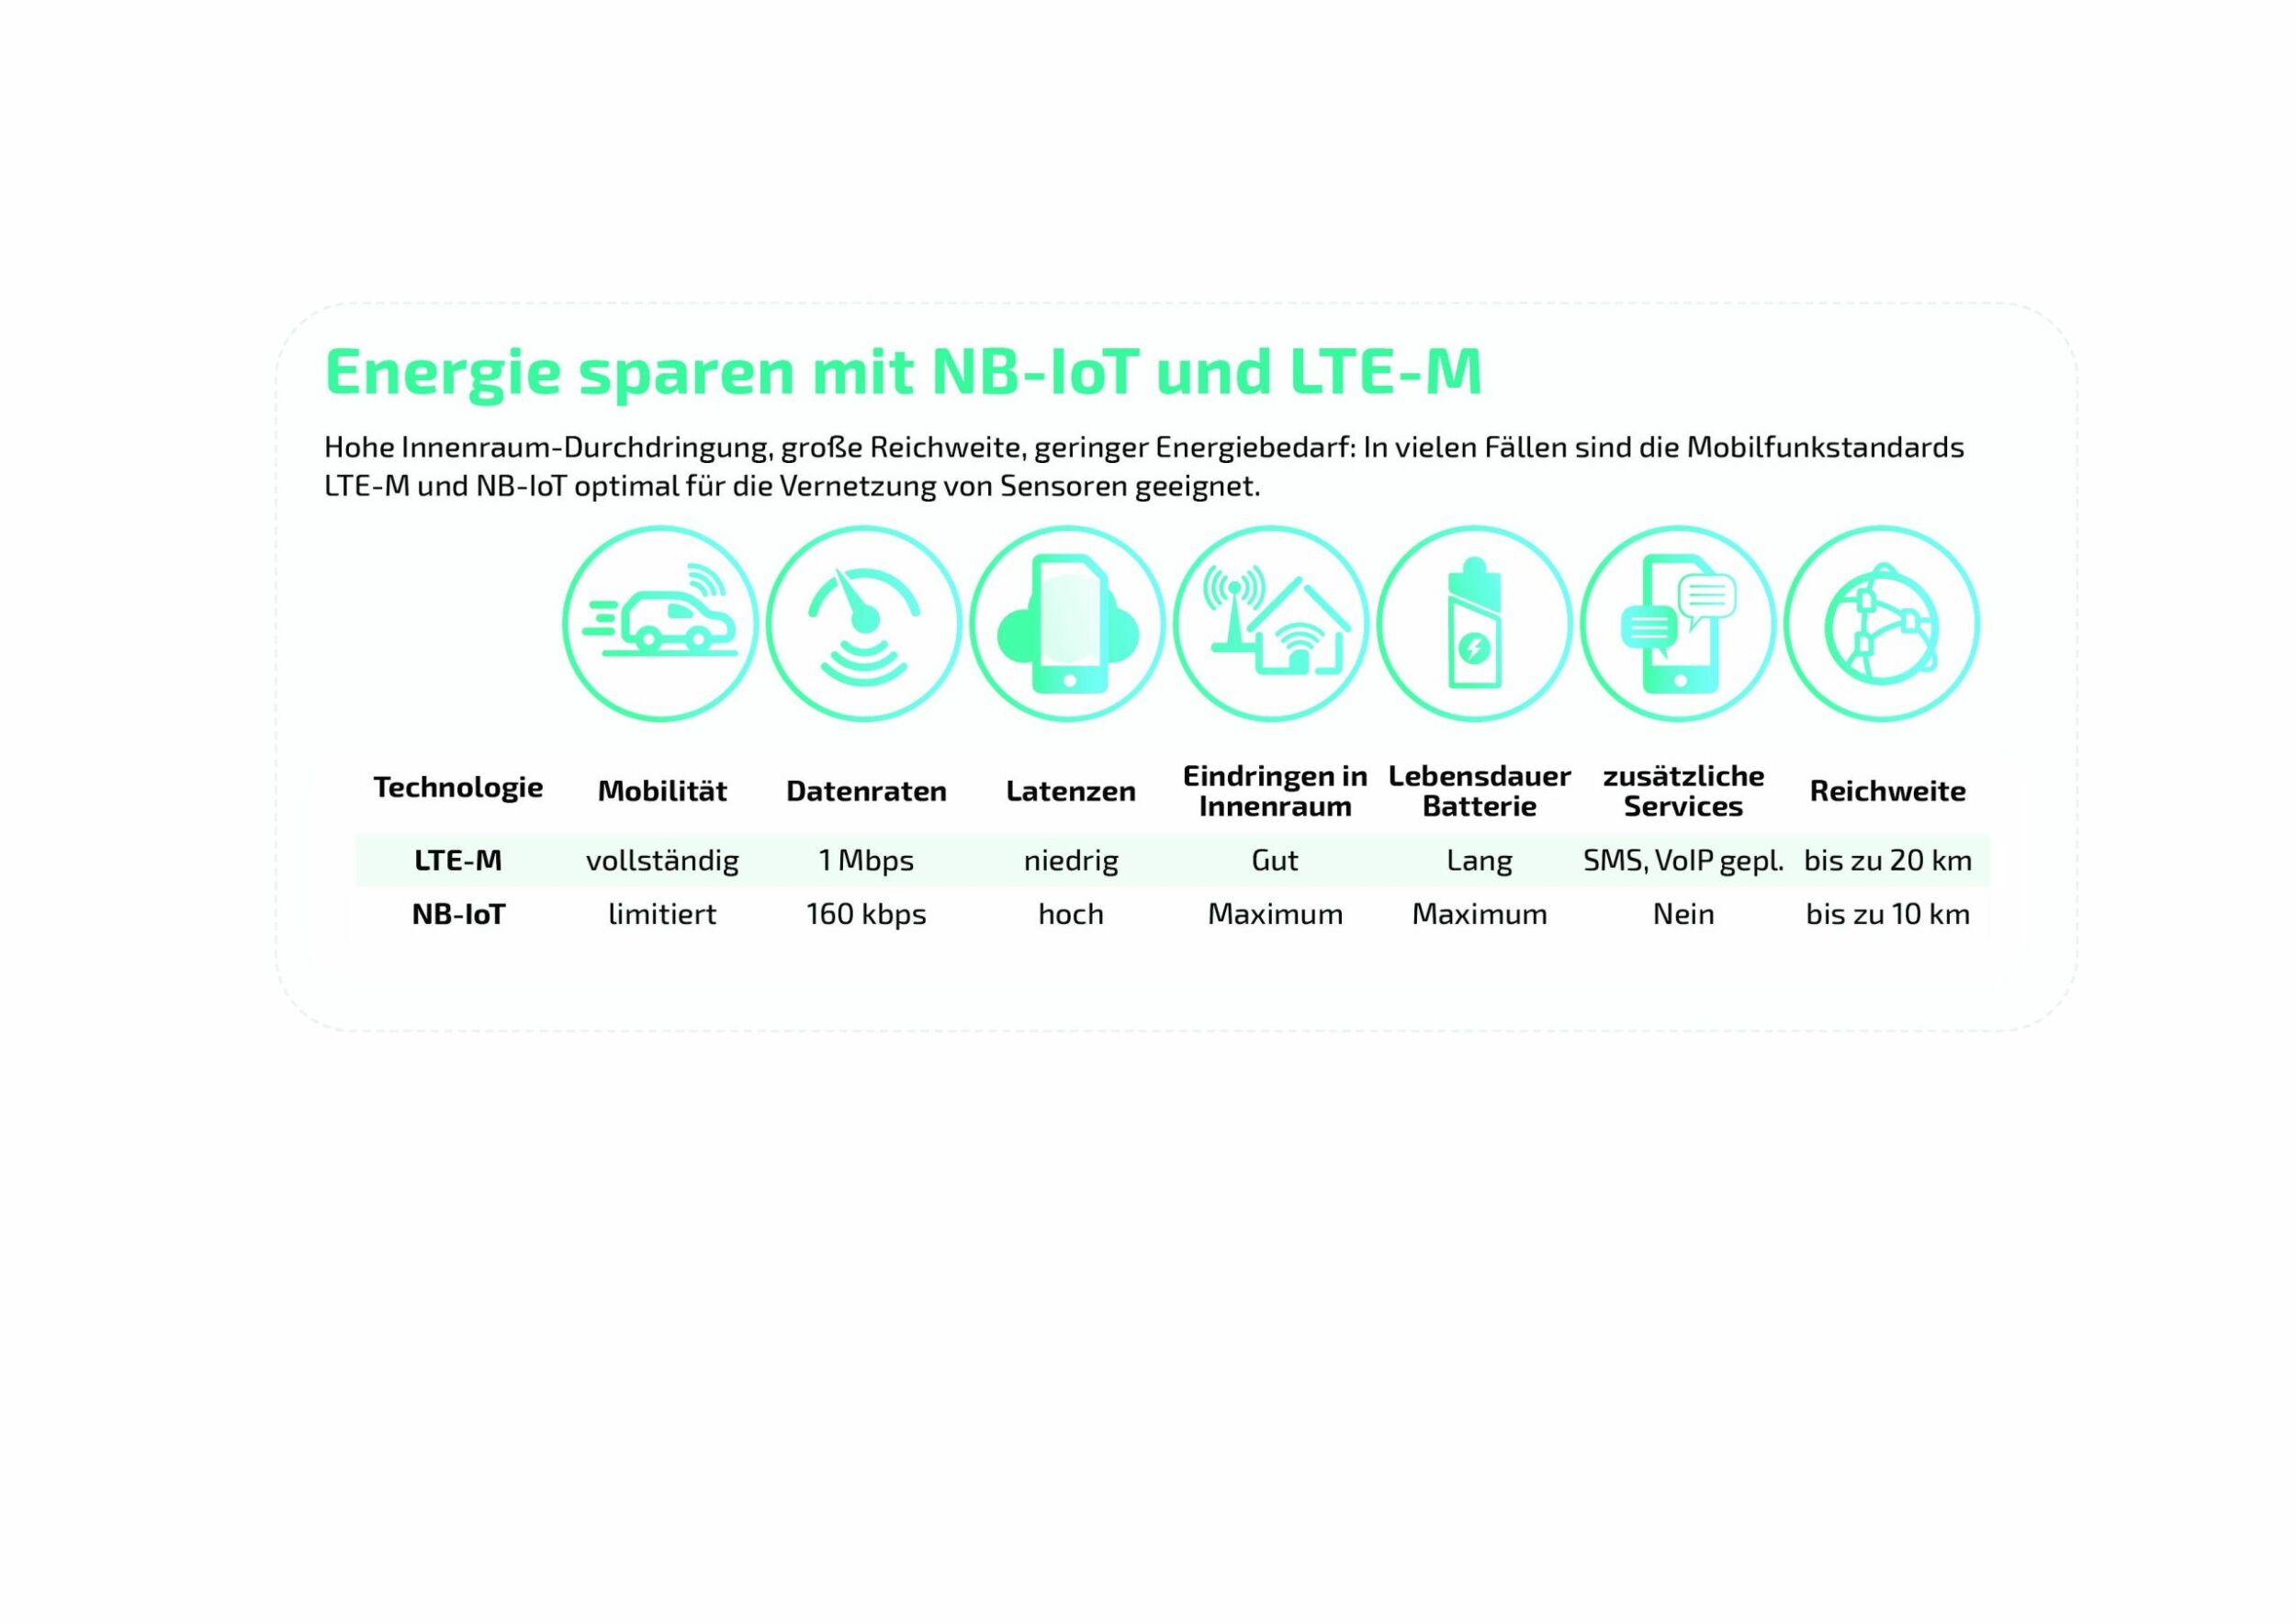 NB-IoT und LTE-M im Direktvergleich. (Bild: Wireless Logic mdex GmbH)